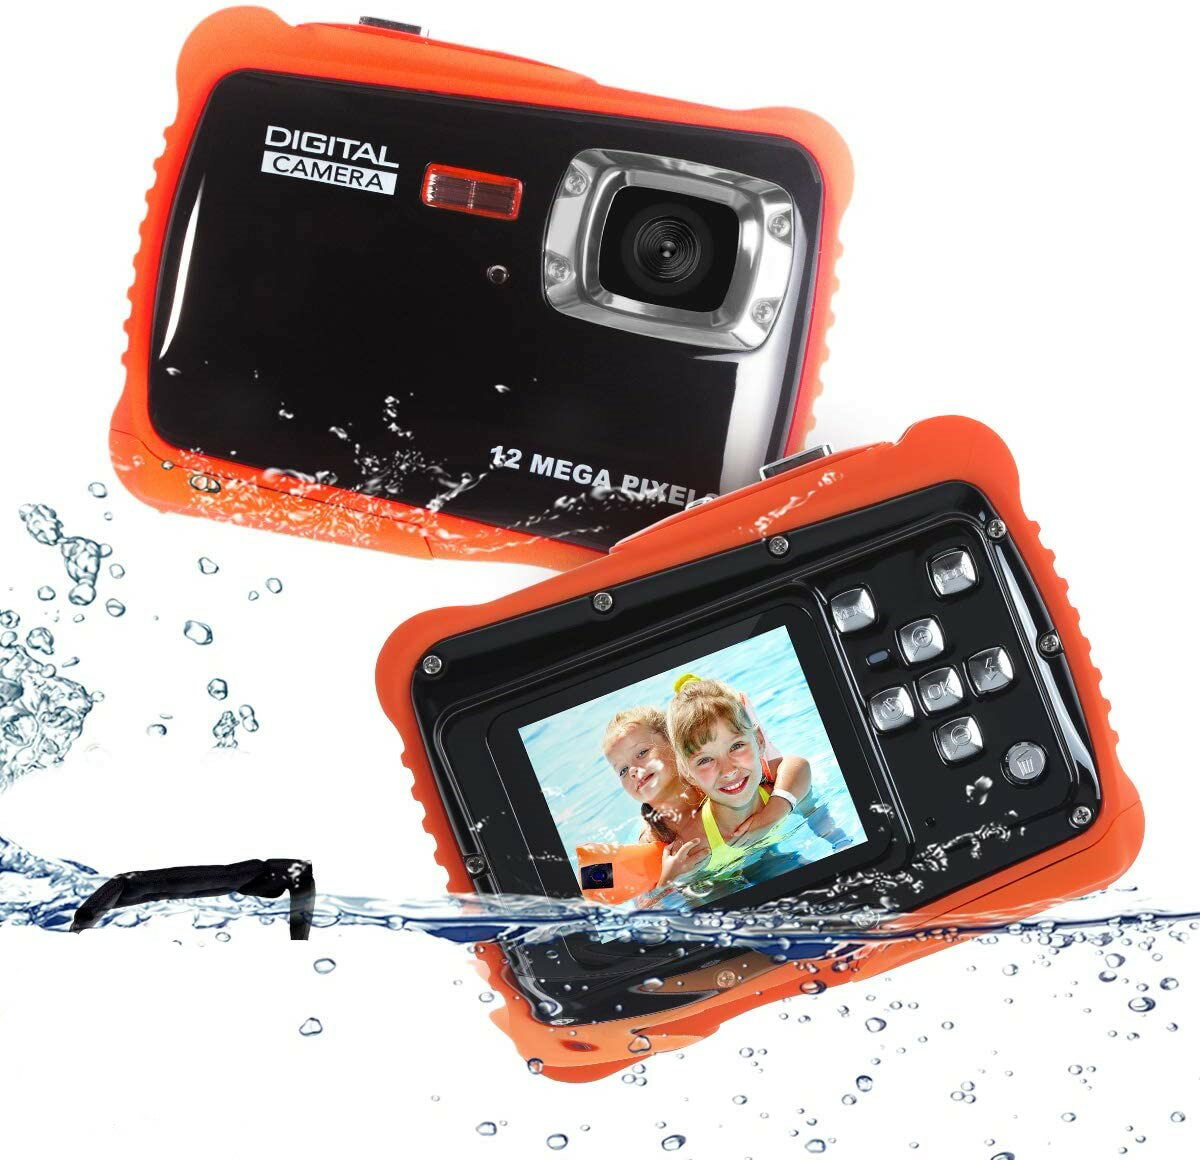 【操作簡単】スマホの撮影のやり方とは違って、子どもでもわかりやすい操作界面、子供に向けのボタン設置、特定の機能もちゃんとボタンの中に刻まれているので、使ってみたらすぐ分かります。 【3M防水機能&携帯便利】カメラは防塵だけでなく、カメラフロートと3Mまでの防水機能が搭載されます。夏に泳いでいる時も水の中で撮影できます。子供向きのデザインコンパクトで、子供の手でちゃんと握ることができます。(サイズ：約95*25*70mm；重さ：約110g）小さくて携帯便利です。 【安全&子供向きのデザイン】環境に優しい材料を利用から、安心してご使用いただきます。外観はしっかりとしたカメラらしい形デザイン、耐衝撃な材料が採用されたため、落としても壊れにくい設計で、ママも安心。 【高品質画像】2.0インチスクリーンが搭載されたため、子供は撮影しながら写真を見ることもできます。 それに、4倍デジタルズーム 、12Mのデジタルカメラで、鮮明に撮影できます。 【日本語説明書】日本語説明書が付属しており、簡単に安心してご利用いただきます。